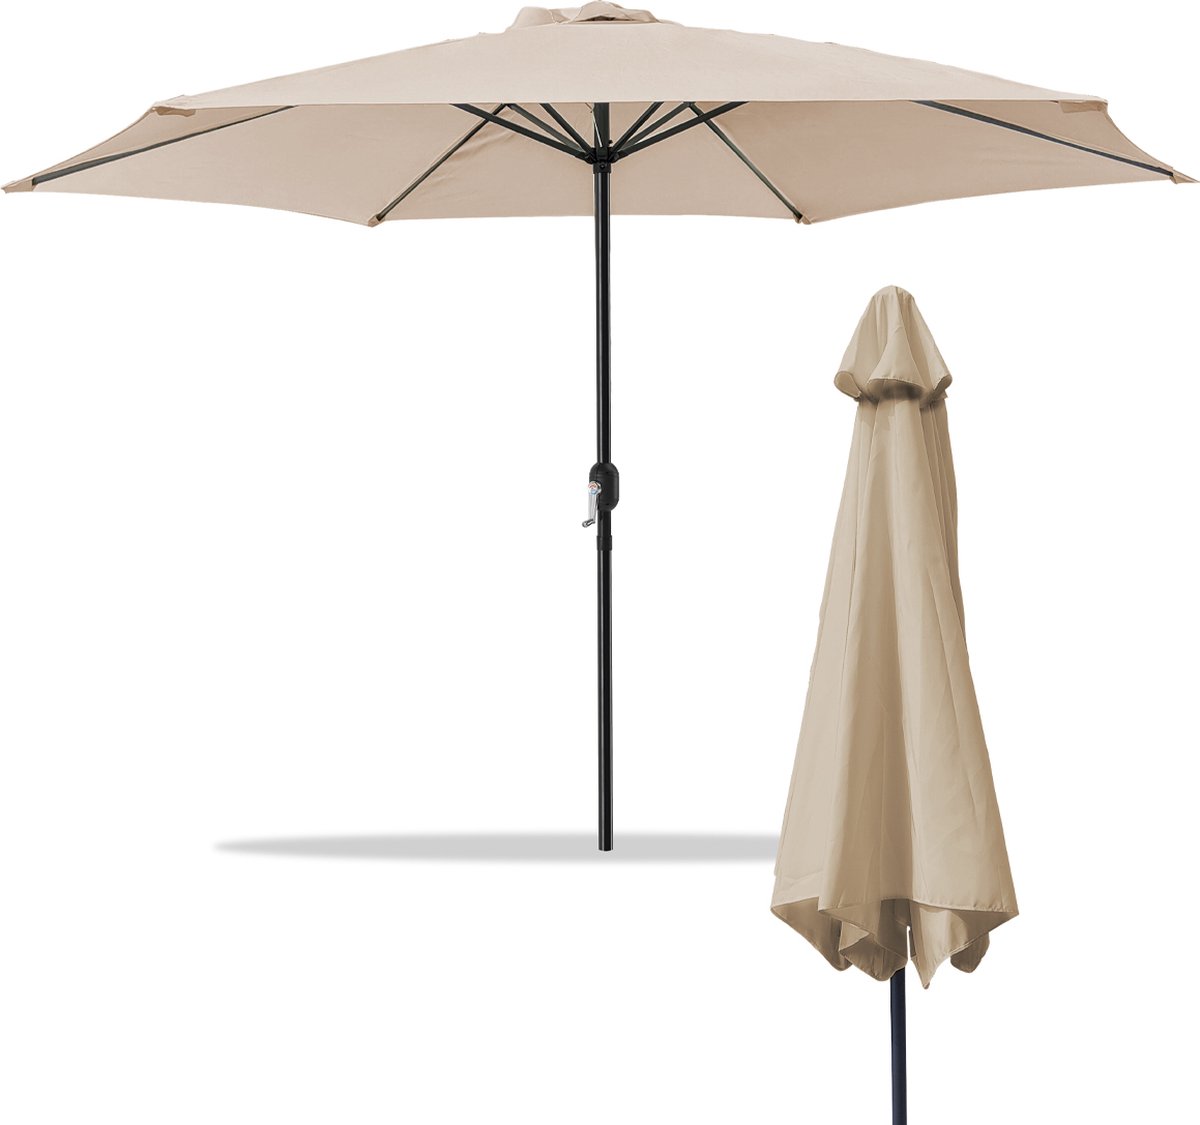 Sombrilla Parasol - Waterdicht - UV-bescherming - 300x300x244 cm - Tuin, strand, balkon etc. - Beige